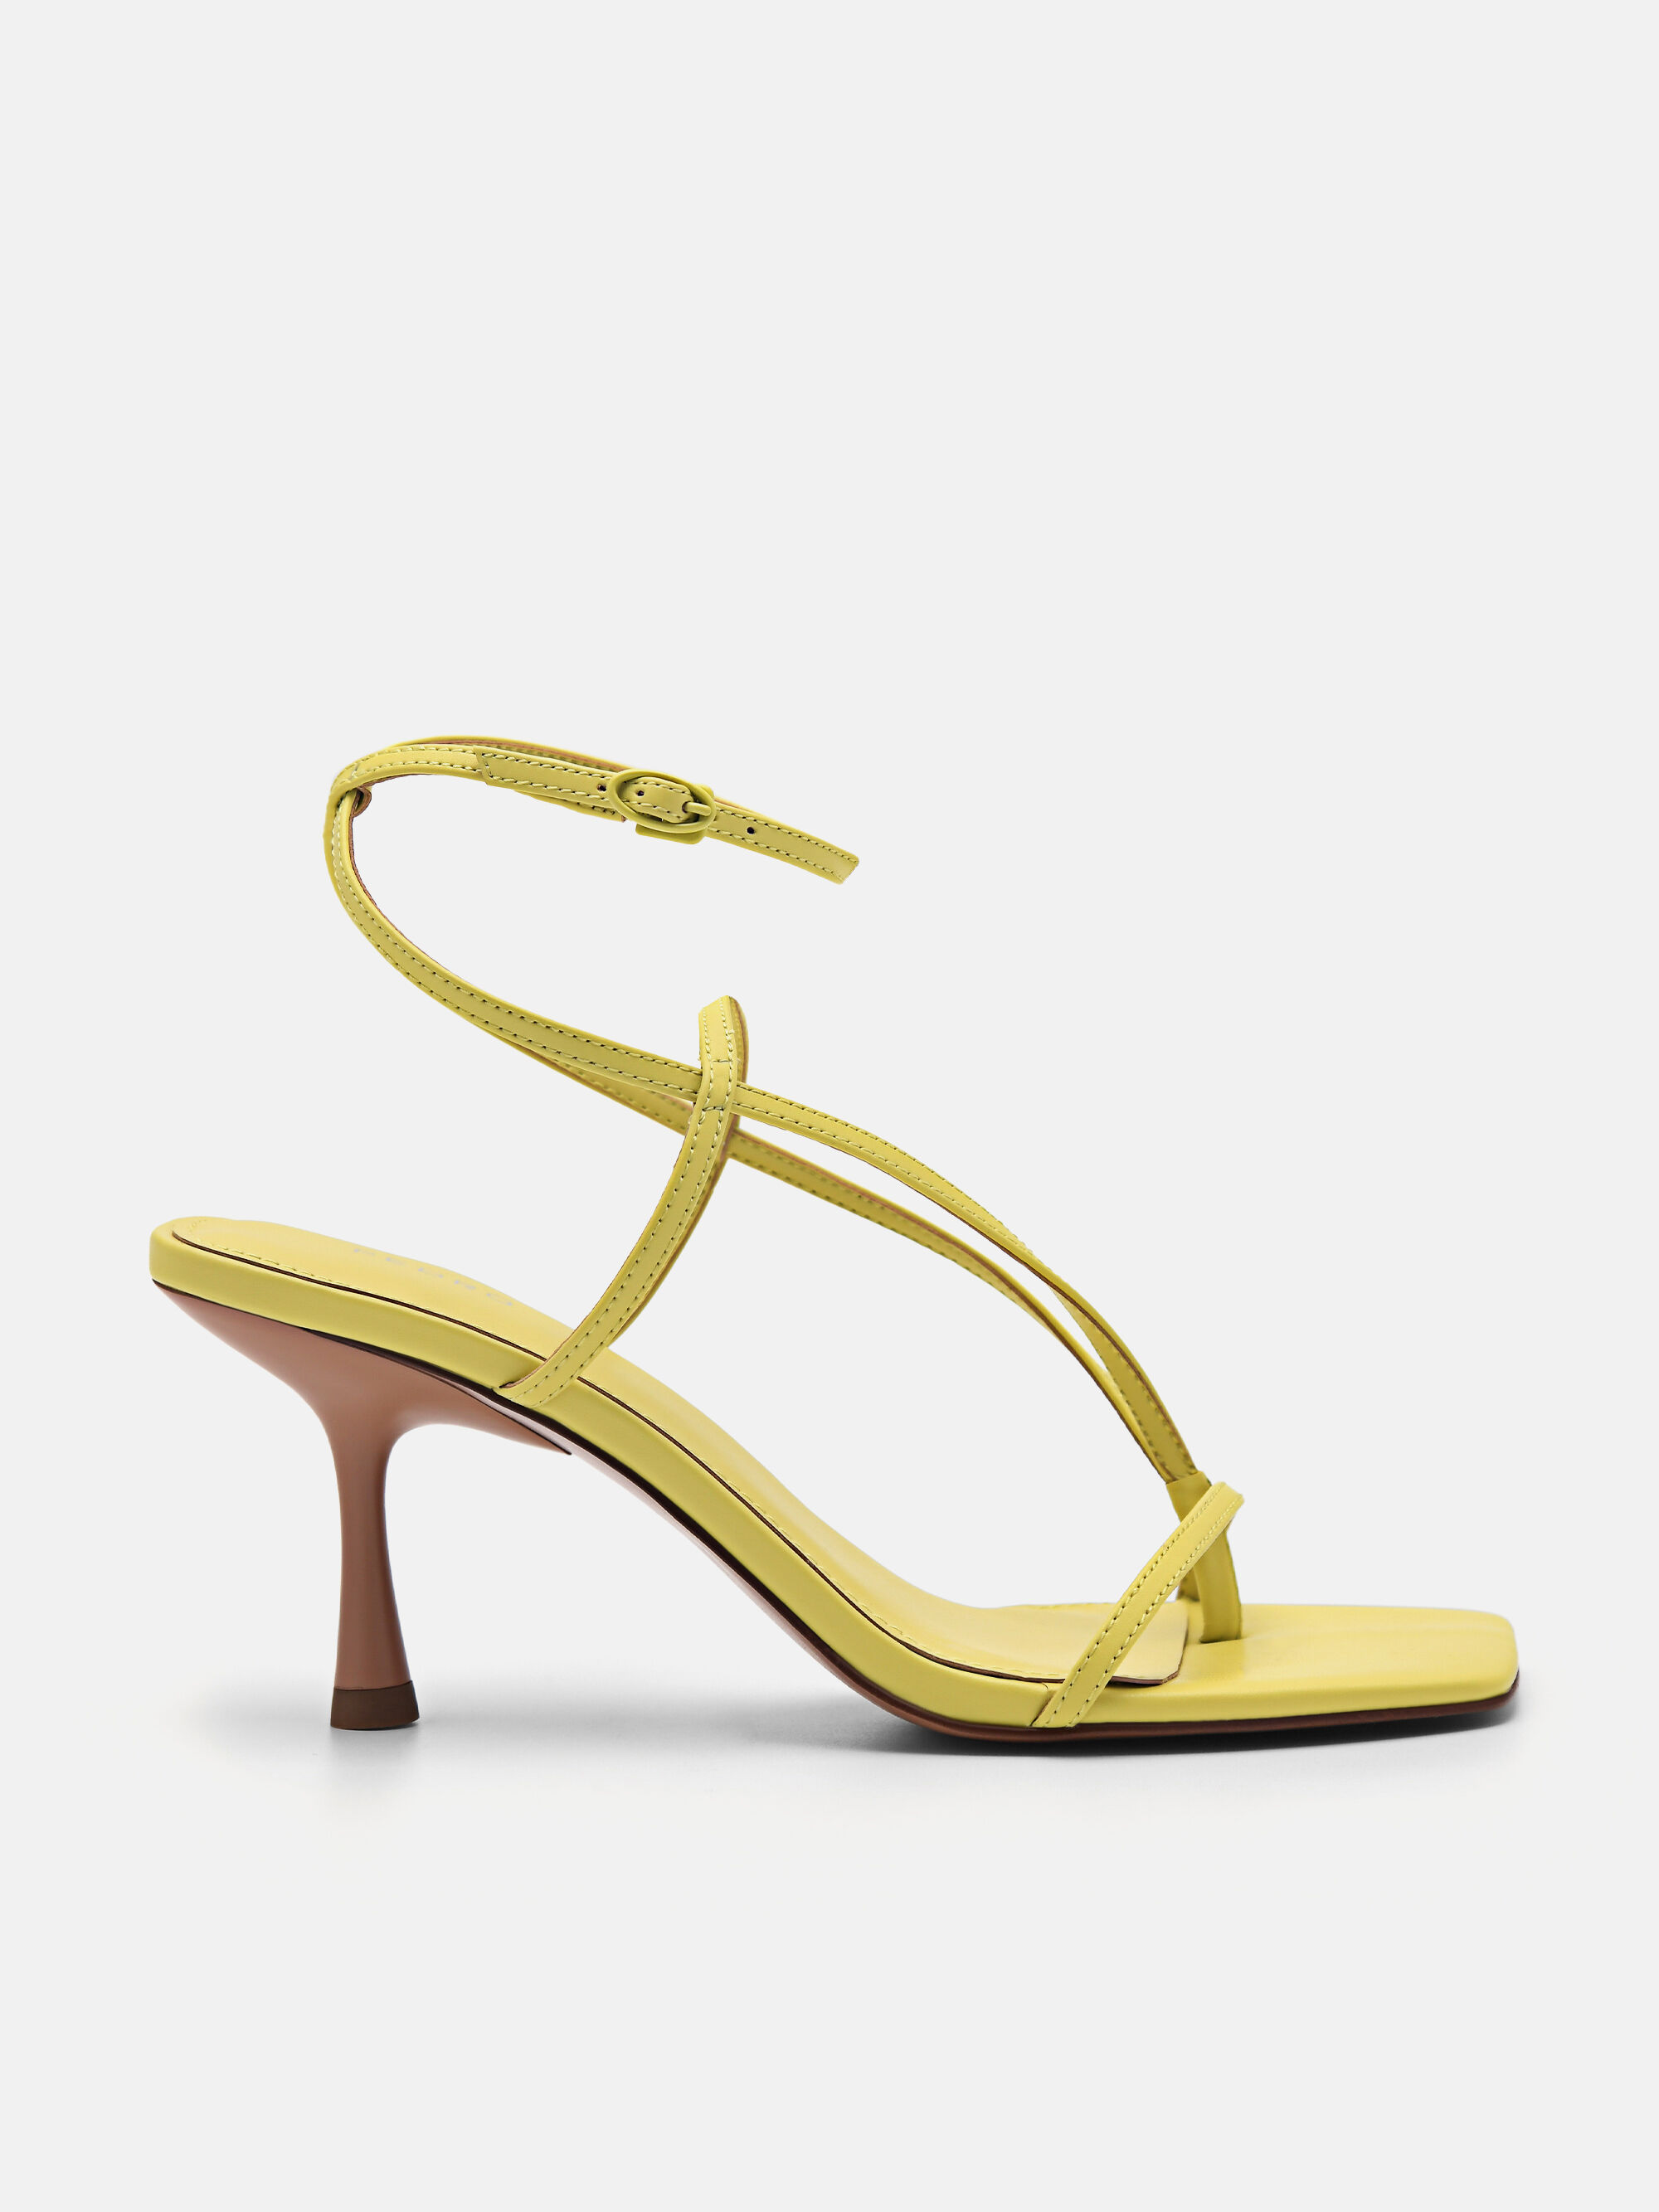 Simmi London black toe post heeled sandals | ASOS | Heel sandals outfit,  Heels, Sandals heels